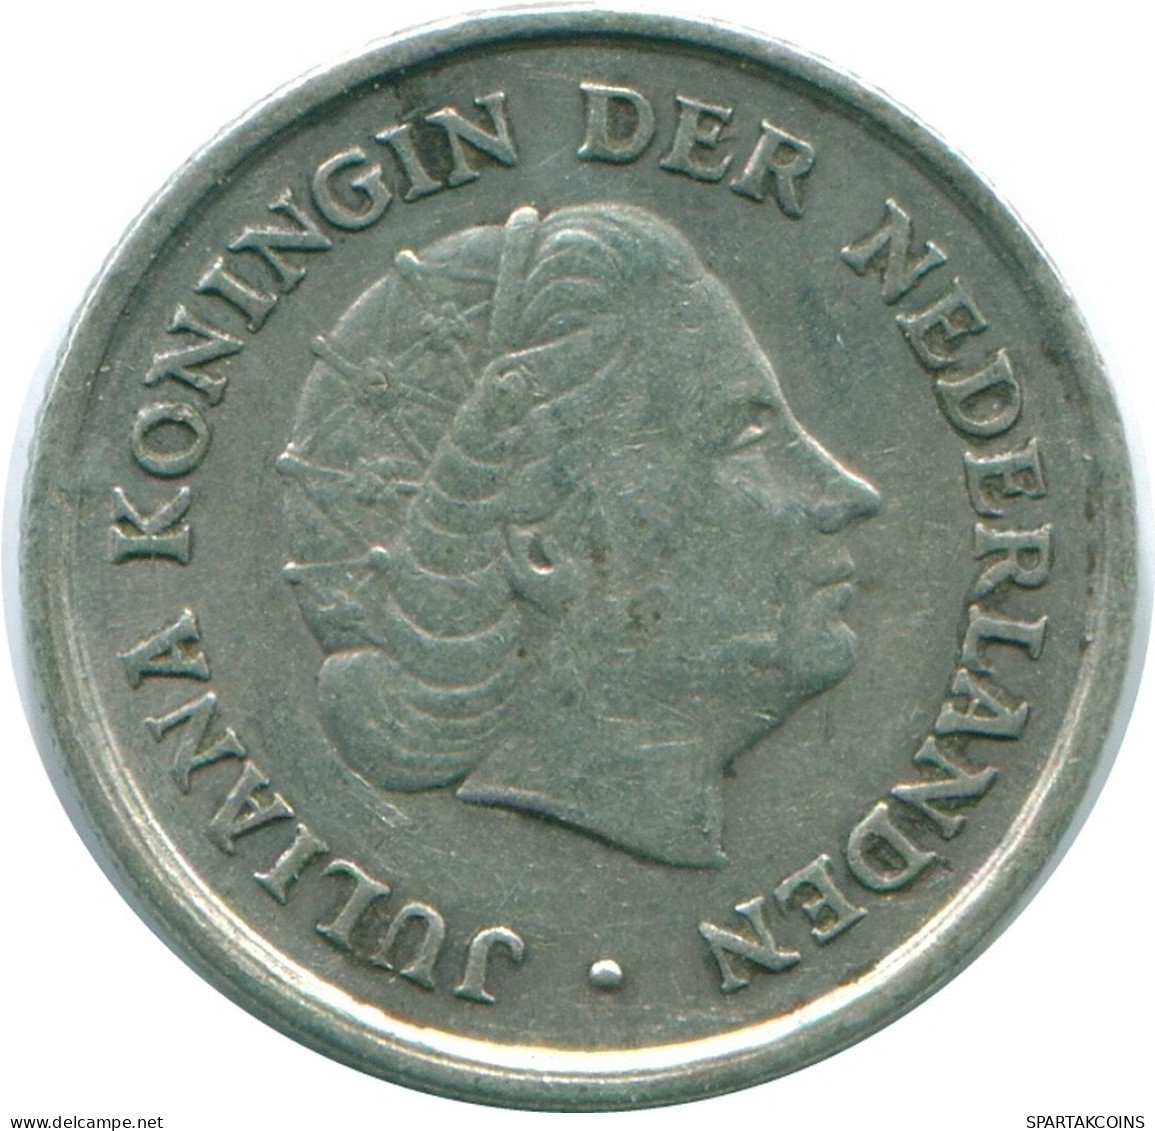 1/10 GULDEN 1966 NIEDERLÄNDISCHE ANTILLEN SILBER Koloniale Münze #NL12827.3.D.A - Antillas Neerlandesas